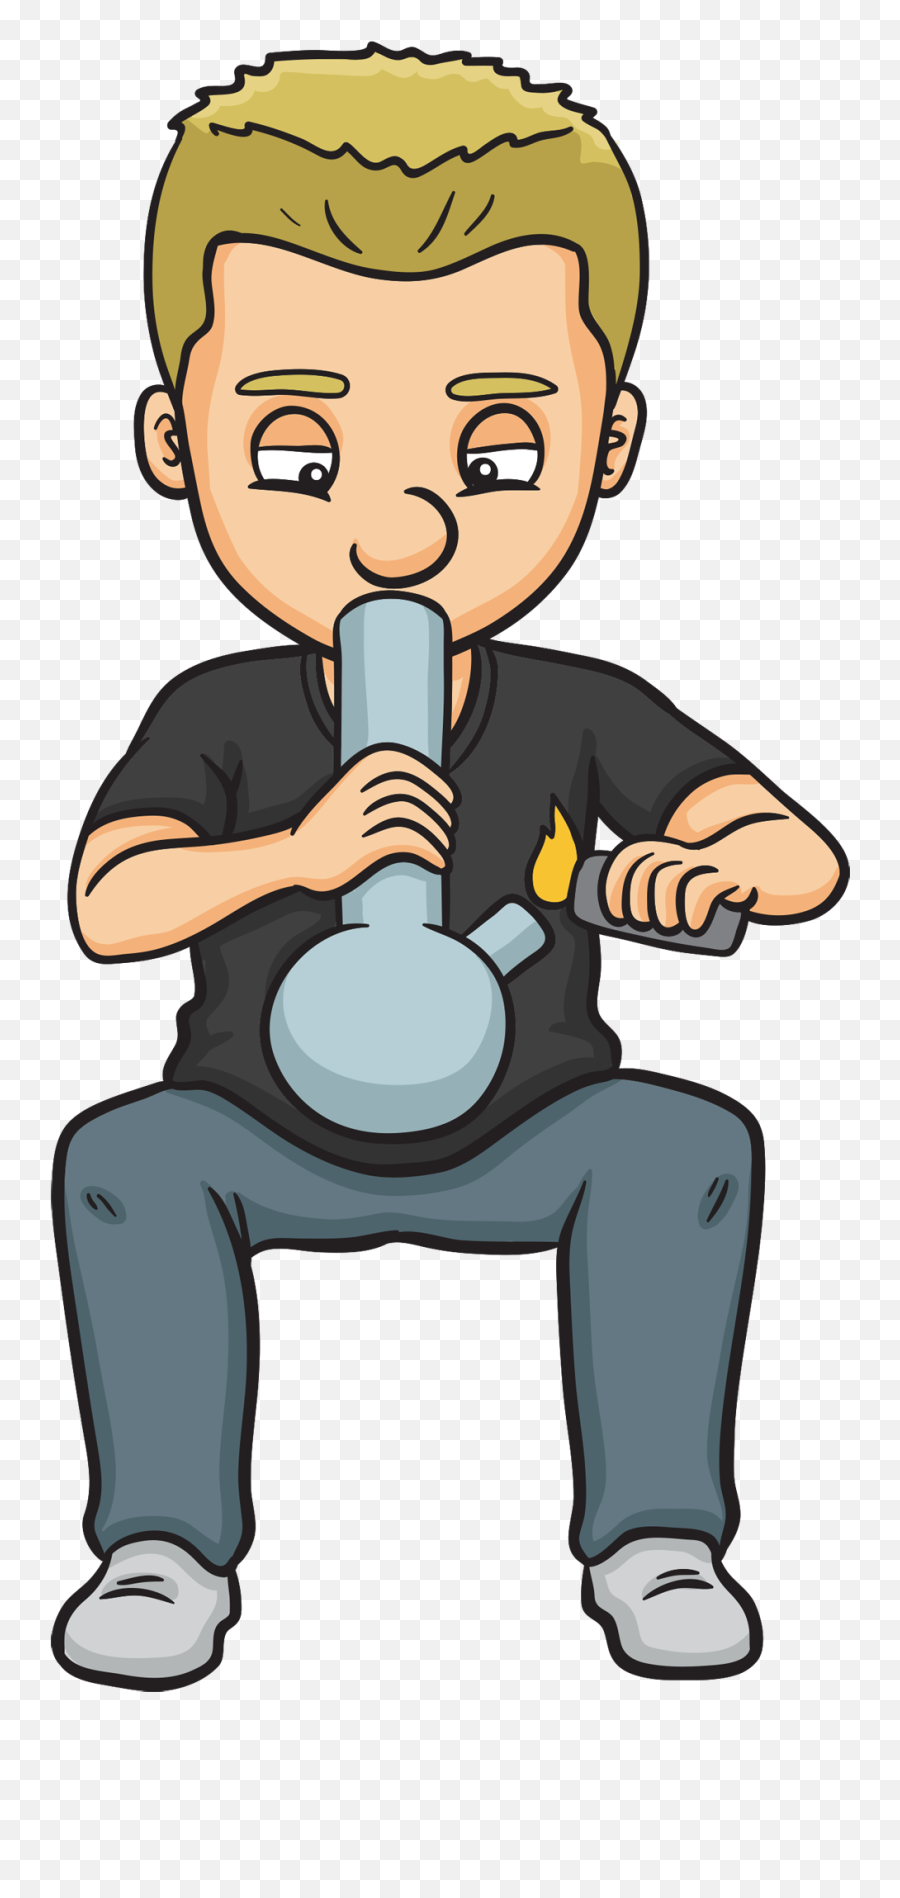 Bong - Someone Smoking Weed Cartoon Transparent Png Kid Smoking Weed Cartoon Emoji,Bong Png